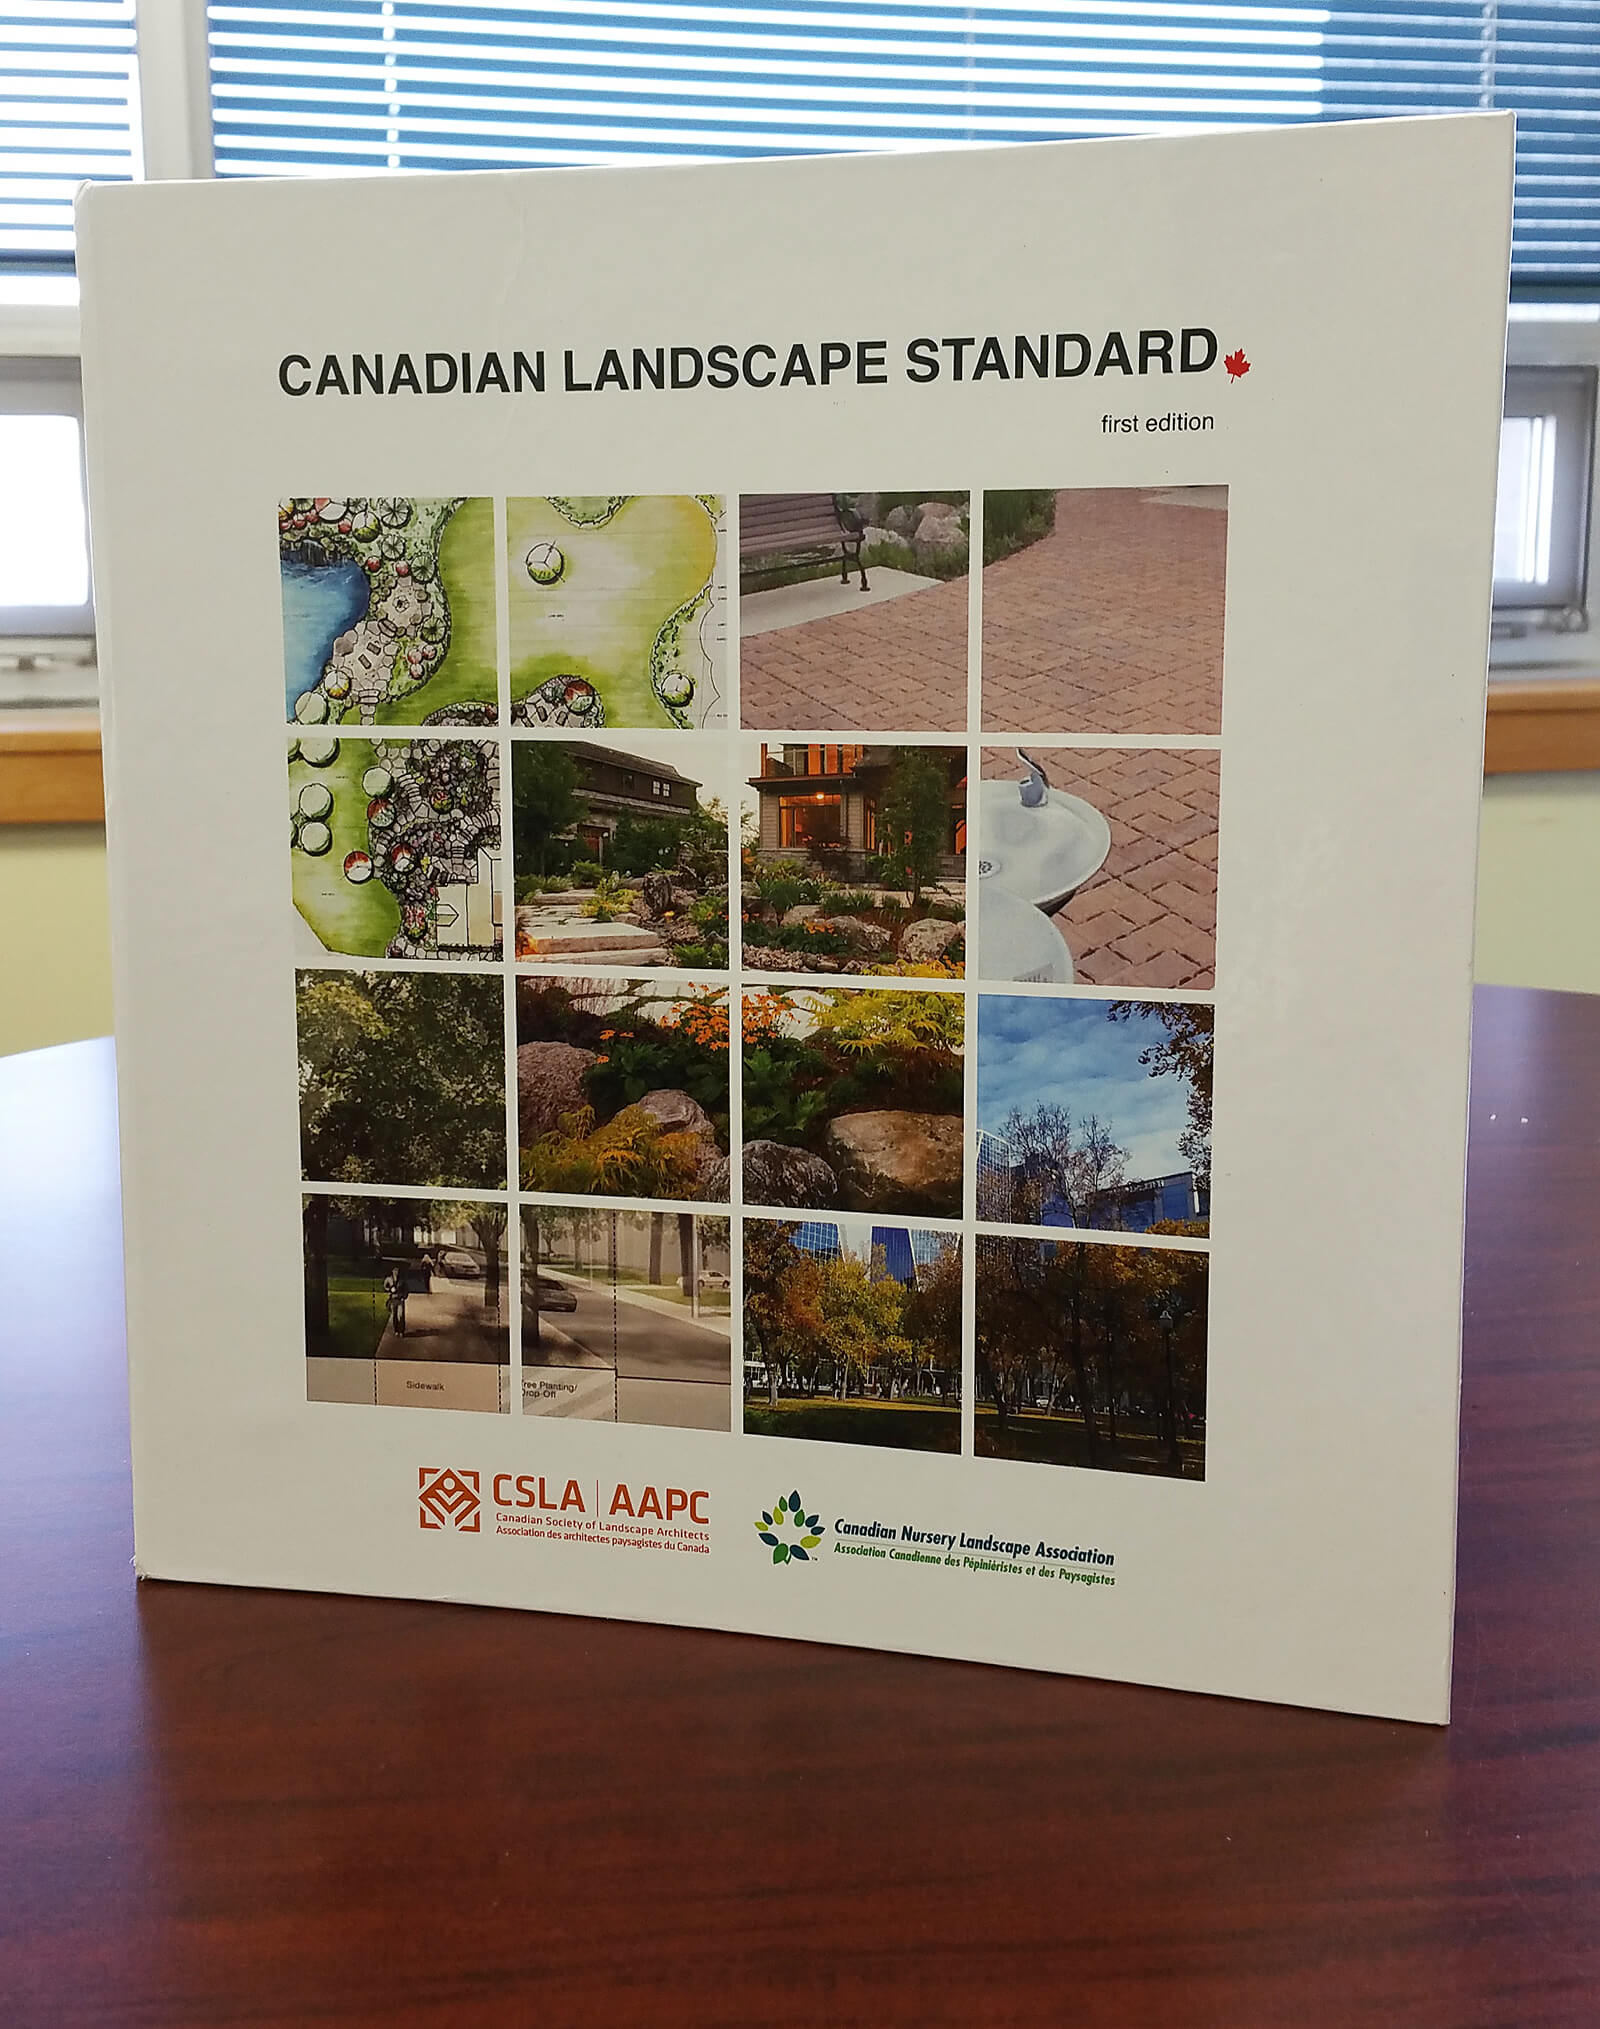 Canadian Landscape Standard